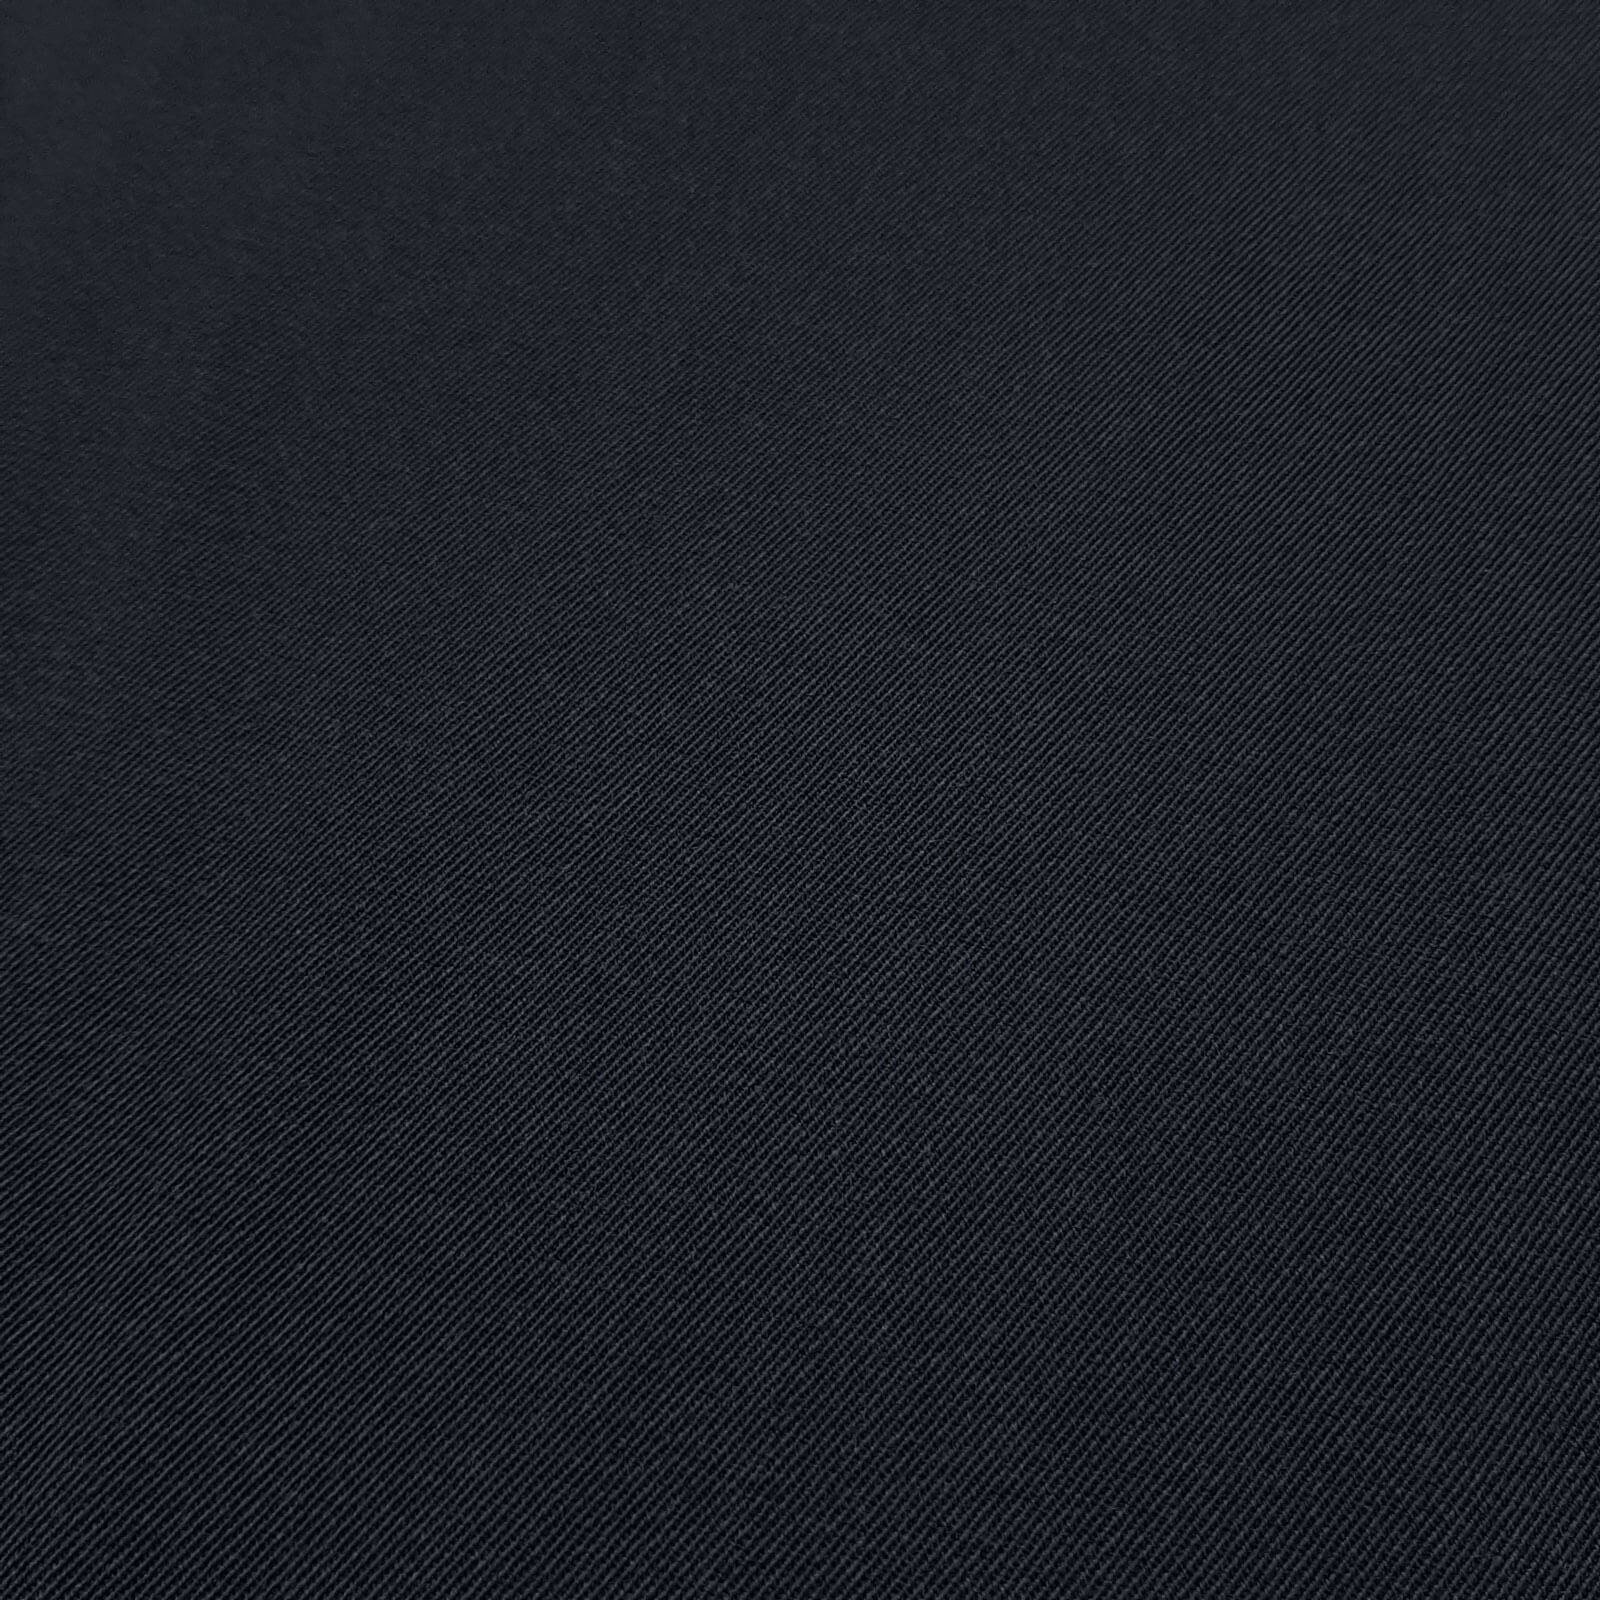 Franziska - tecido 100% lã virgem / pano de lã uniforme – Marinha